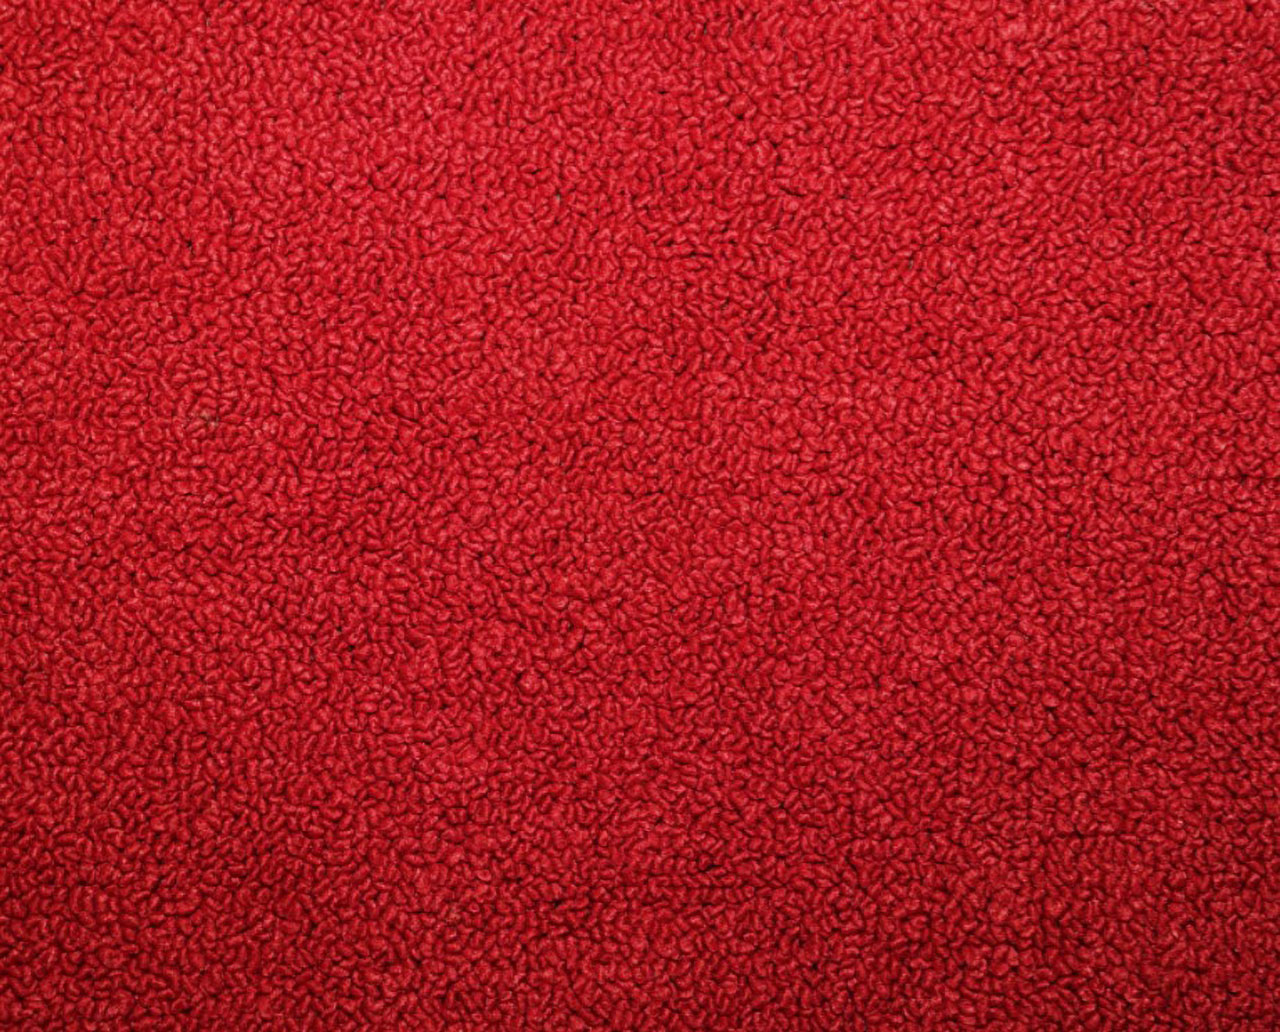 Holden Standard HR Standard Ute E78 Mephisto Red Carpet (Image 1 of 1)